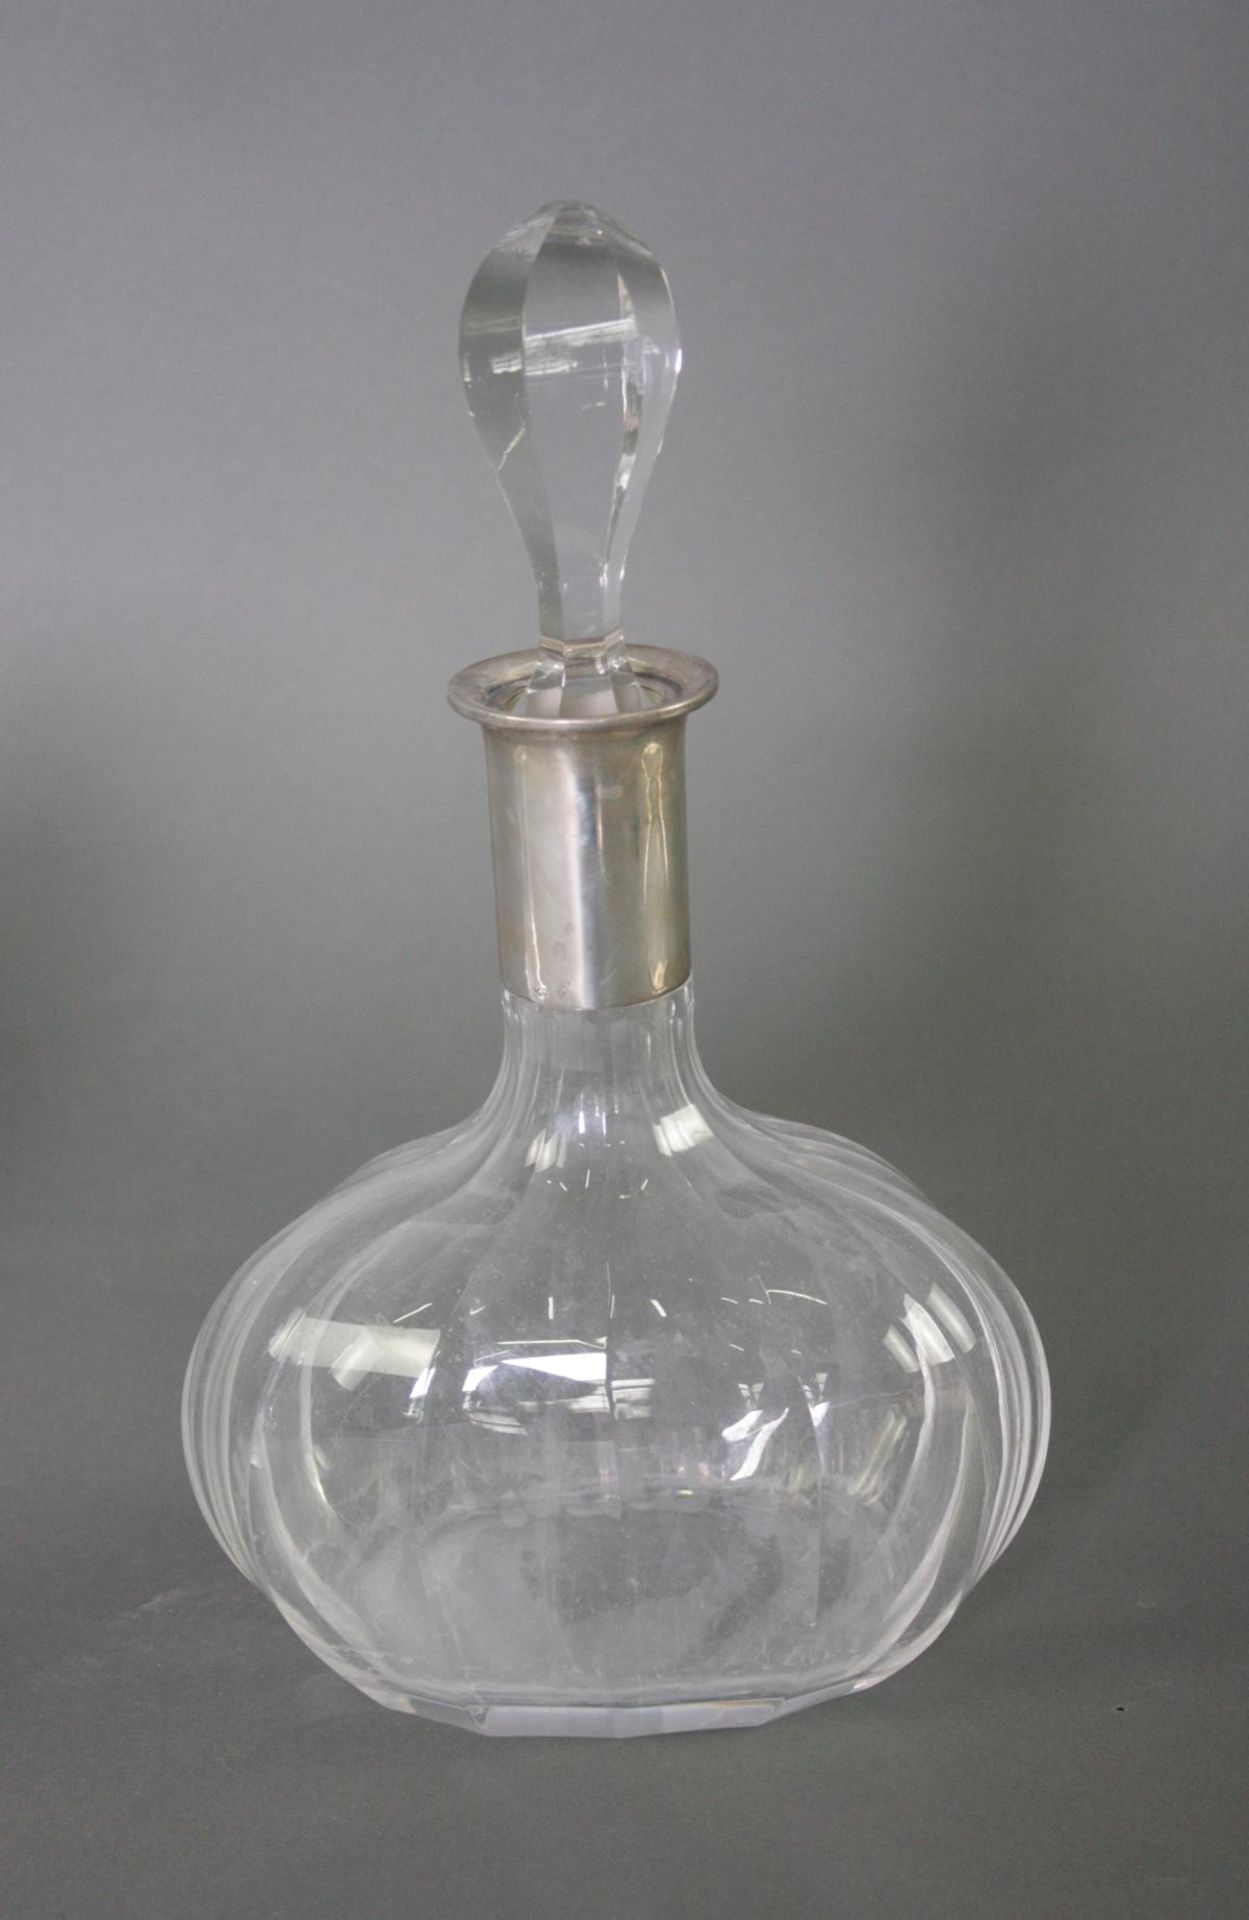 3 Teile Kristall mit Silbermontur. Karaffe, Schale und Vase - Image 3 of 5